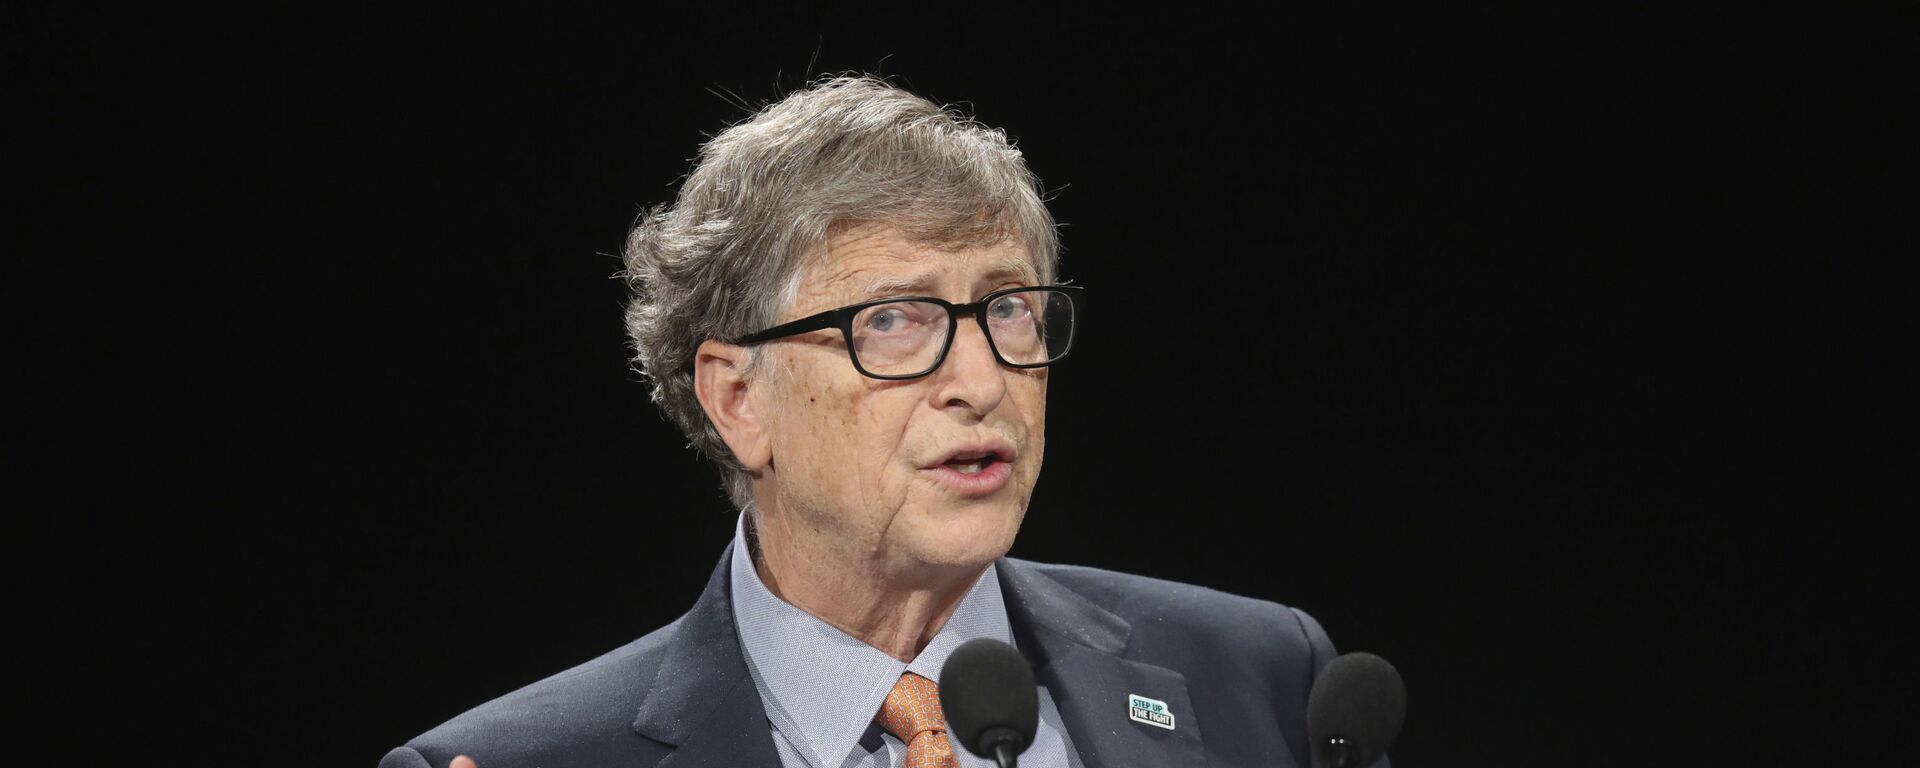 Bill Gates, multimillonario y filántropo estadounidense - Sputnik Mundo, 1920, 27.01.2021